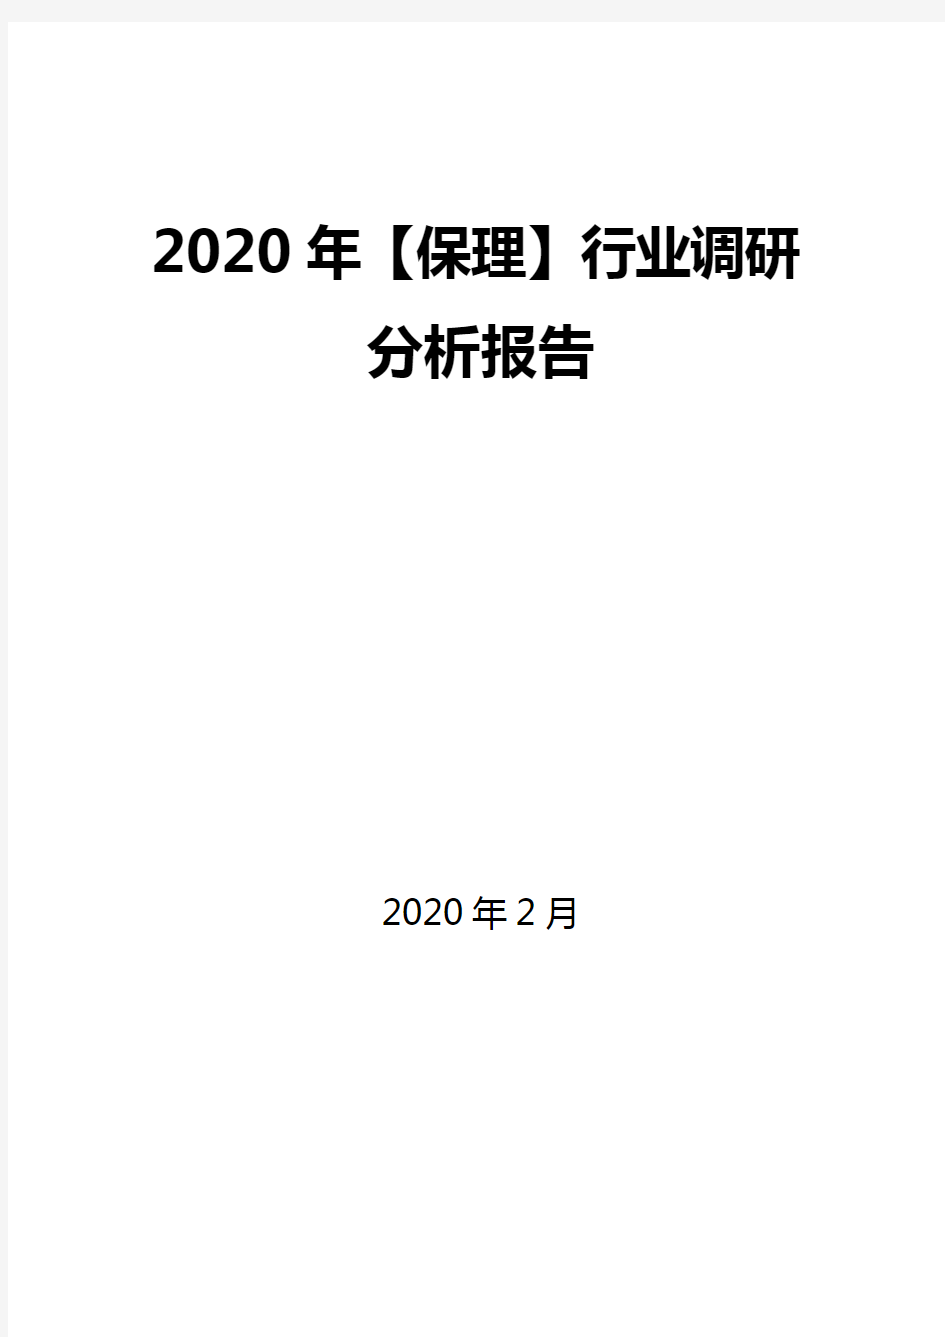 2020年【保理】行业调研分析报告